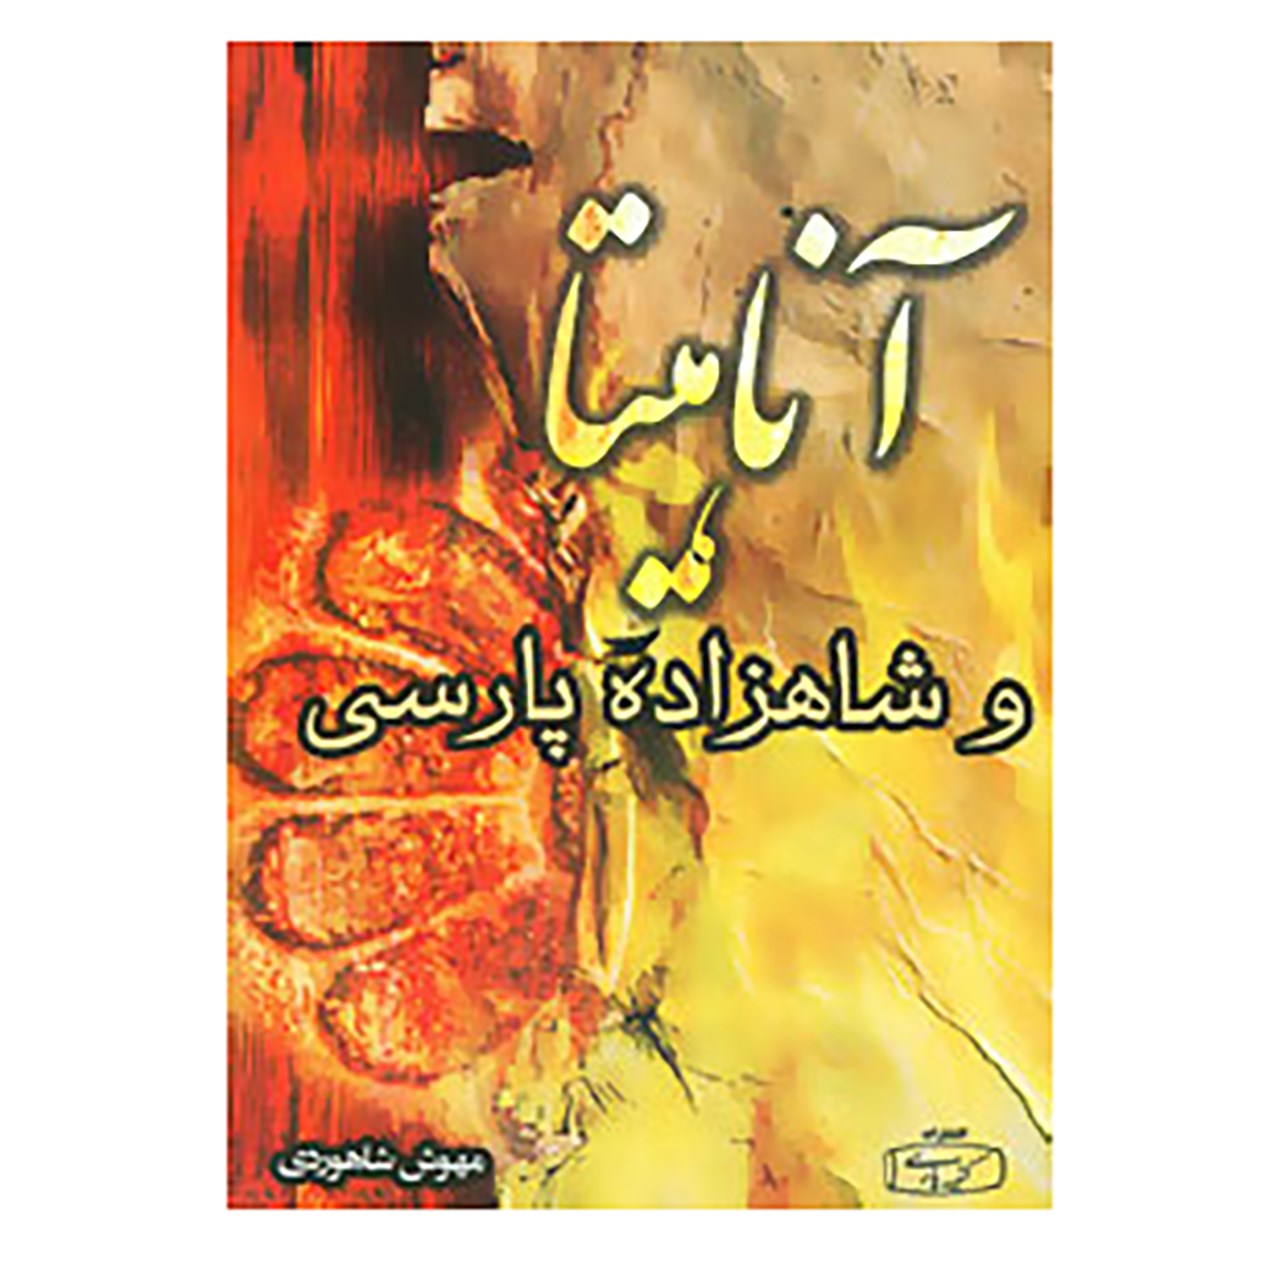 کتاب آناهیتا و شاهزاده پارسی اثر مهوش شاهوردی